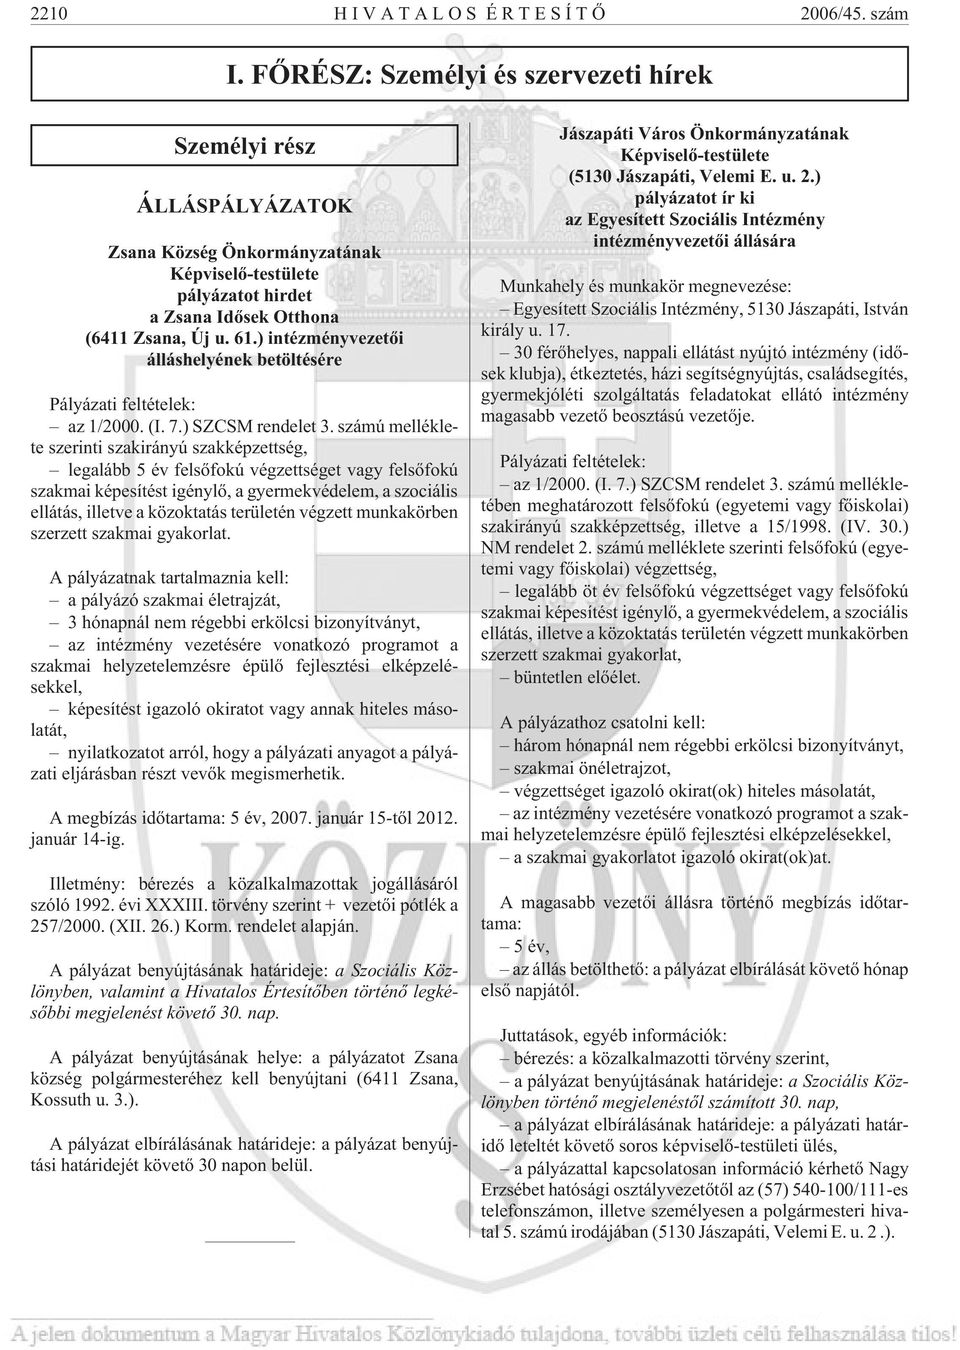 ) intézményvezetõi álláshelyének betöltésére Pályázati feltételek: az 1/2000. (I. 7.) SZCSM rendelet 3.